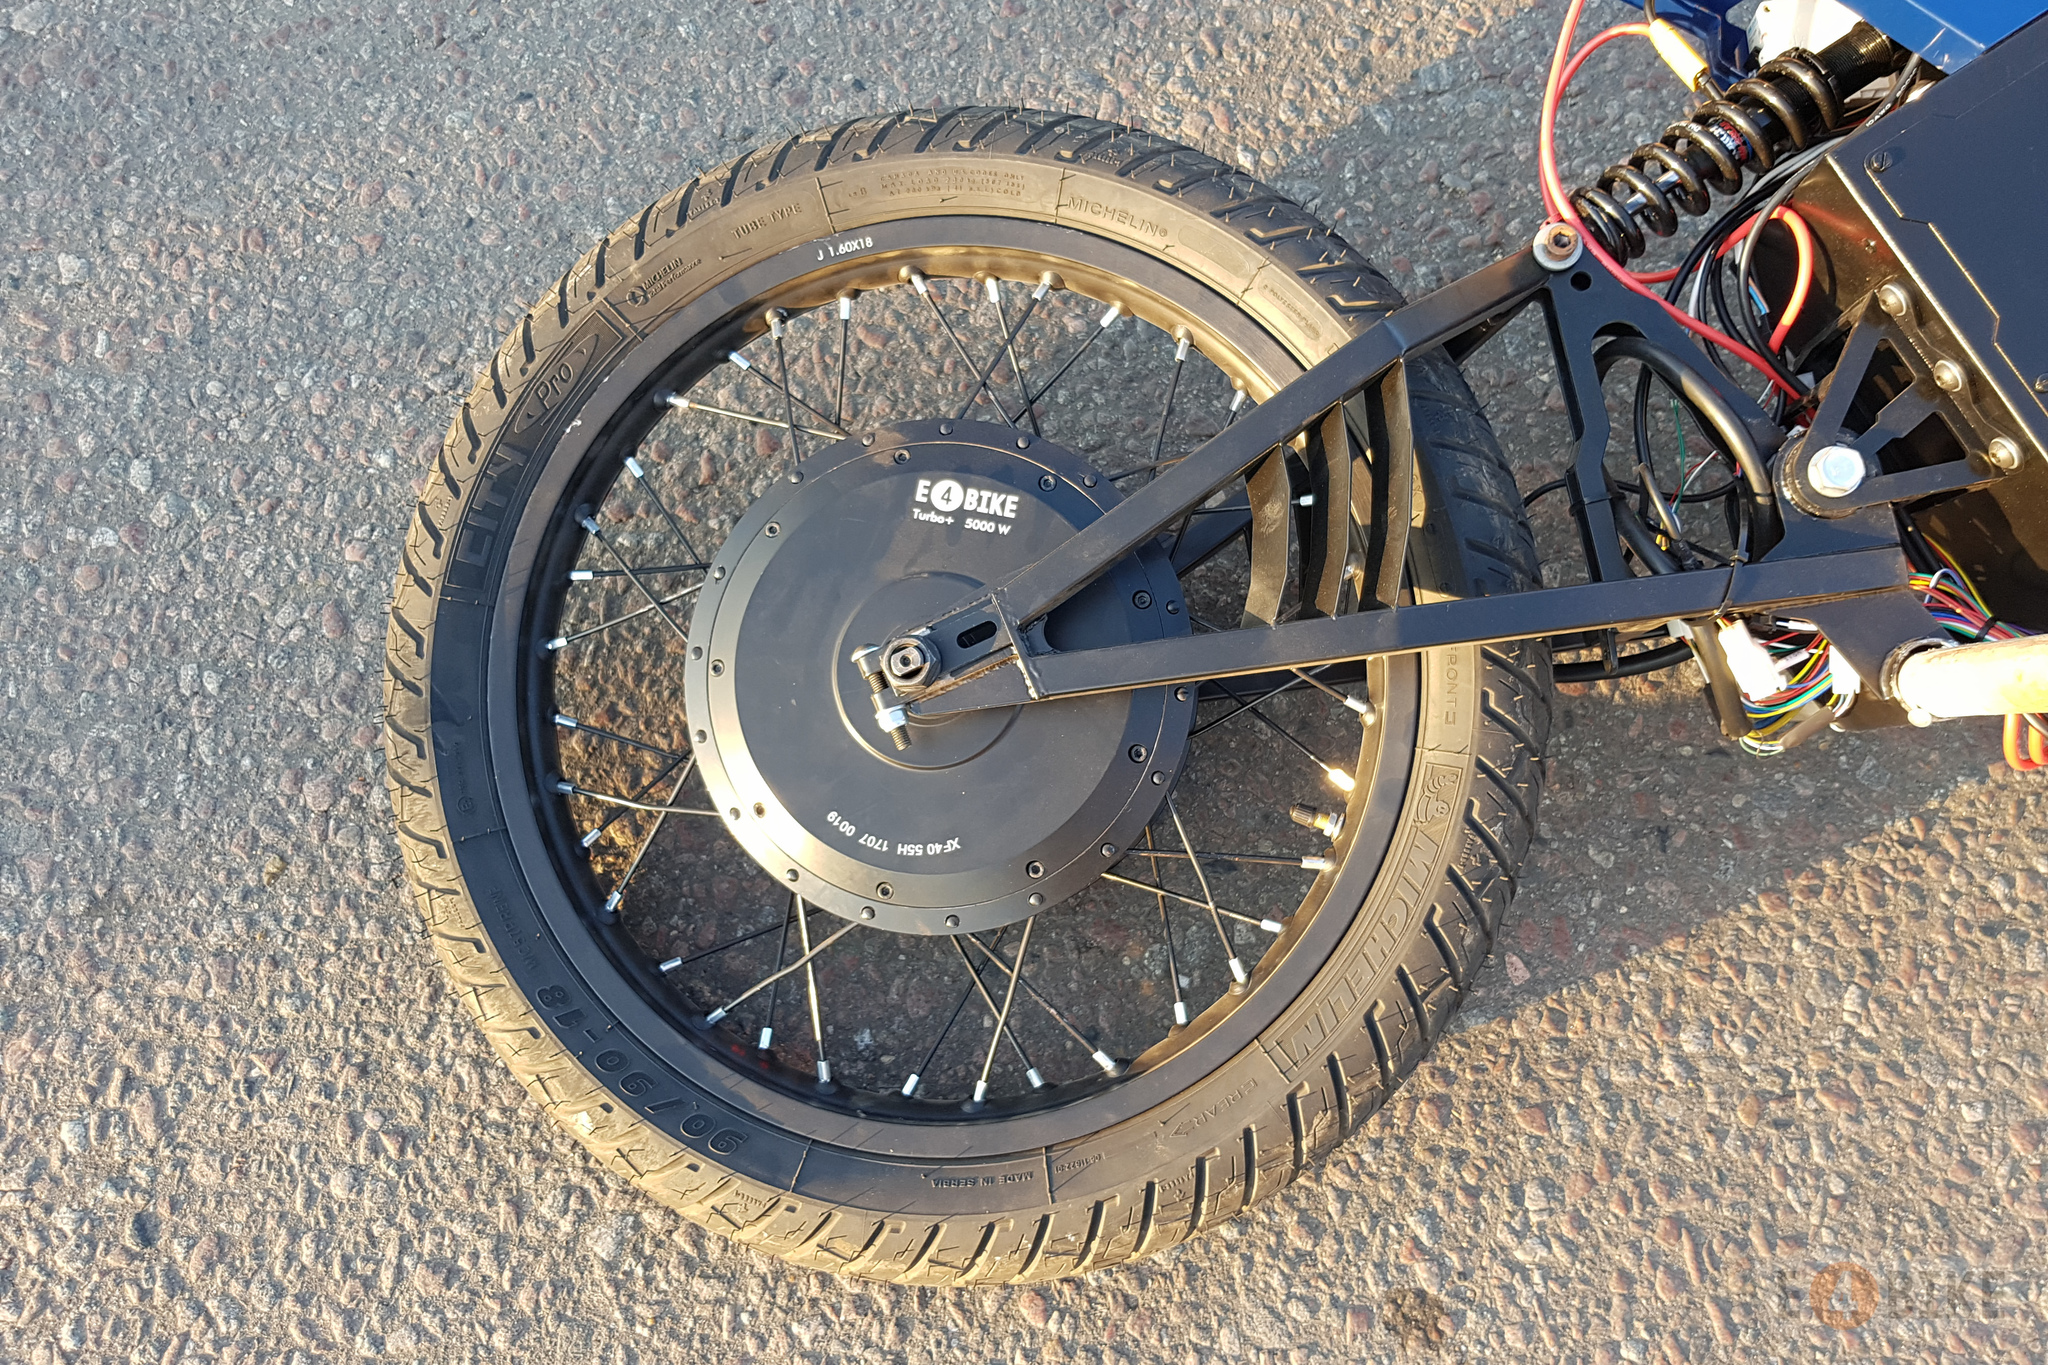 Самодельное асинхронное мотор-колесо для велосипеда как задел для стартапа / Хабр